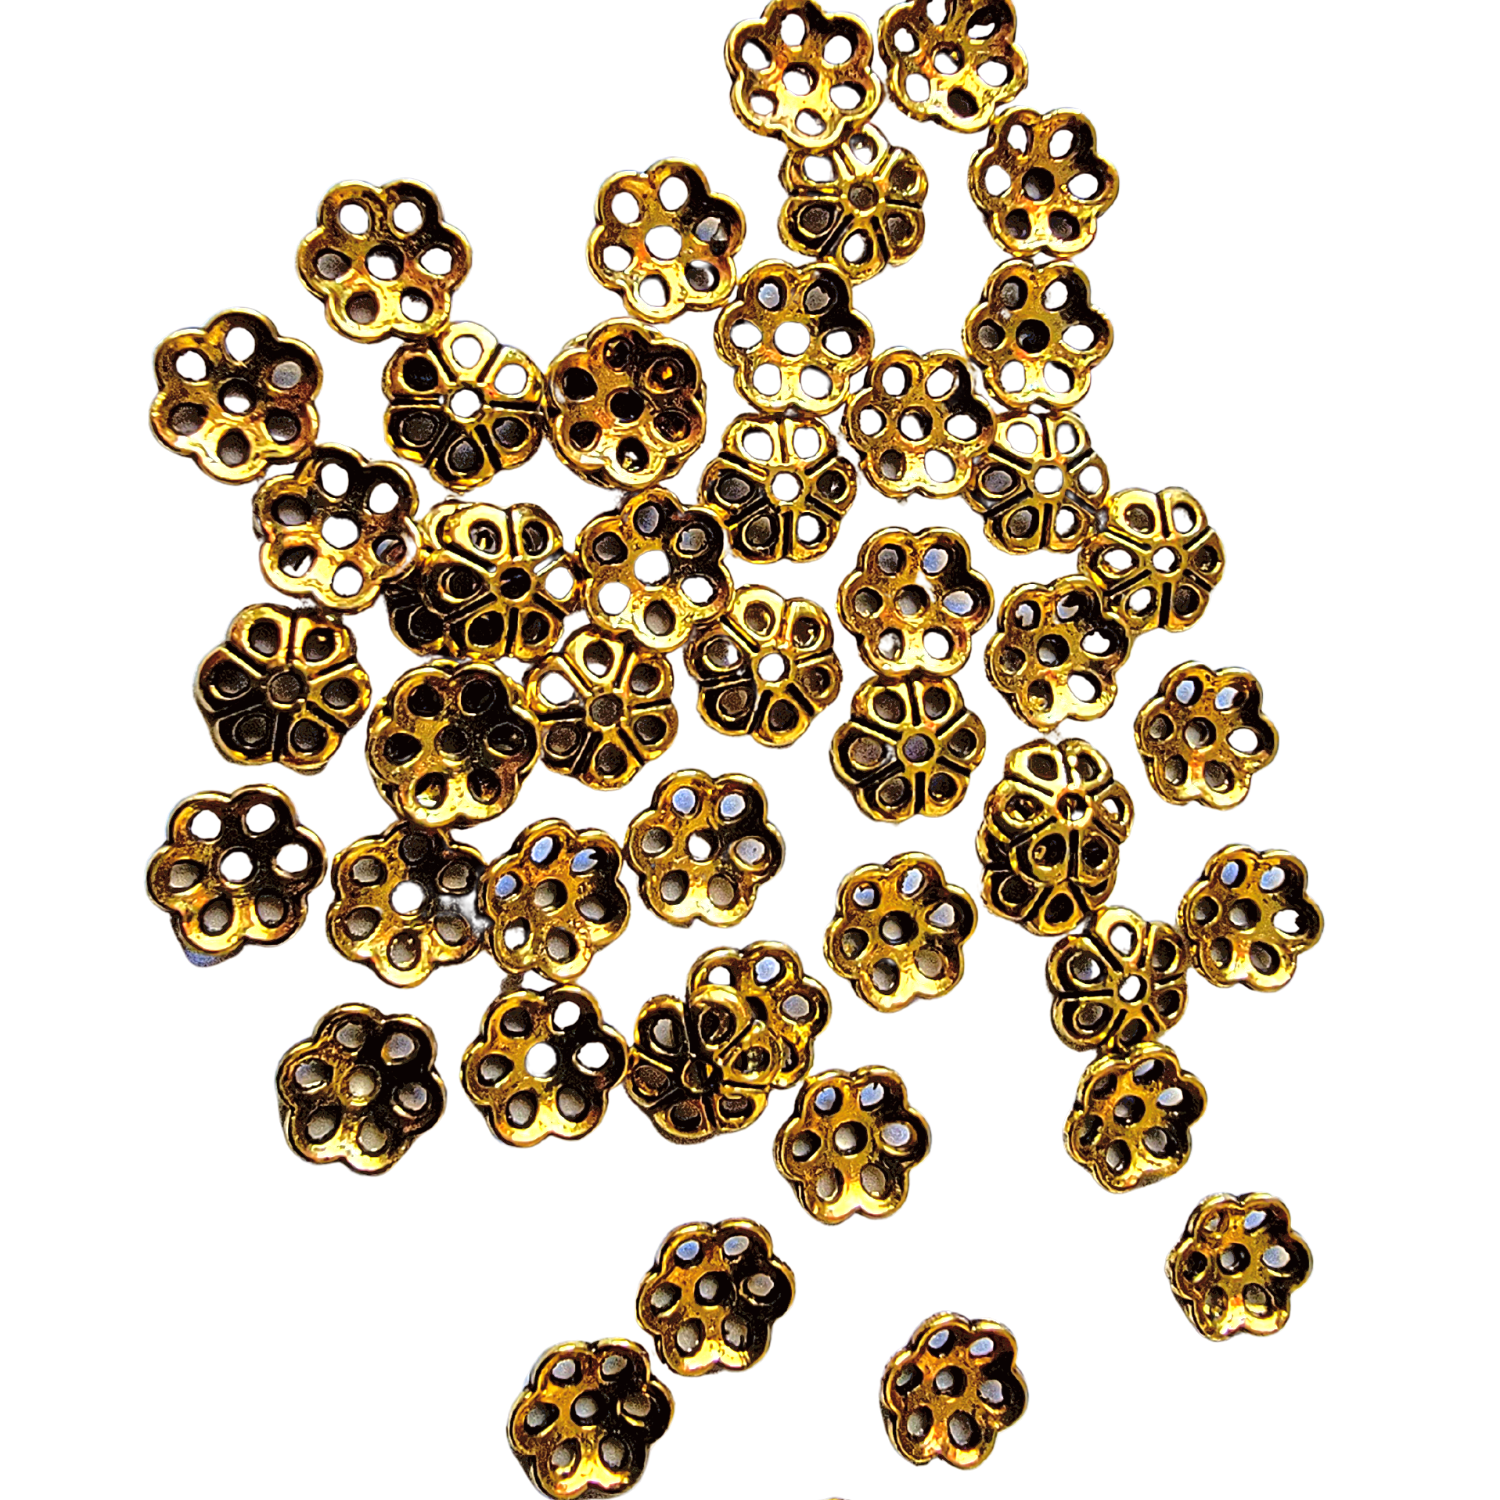 AB-0032 - Antique Gold 7mm Flower Bead Caps